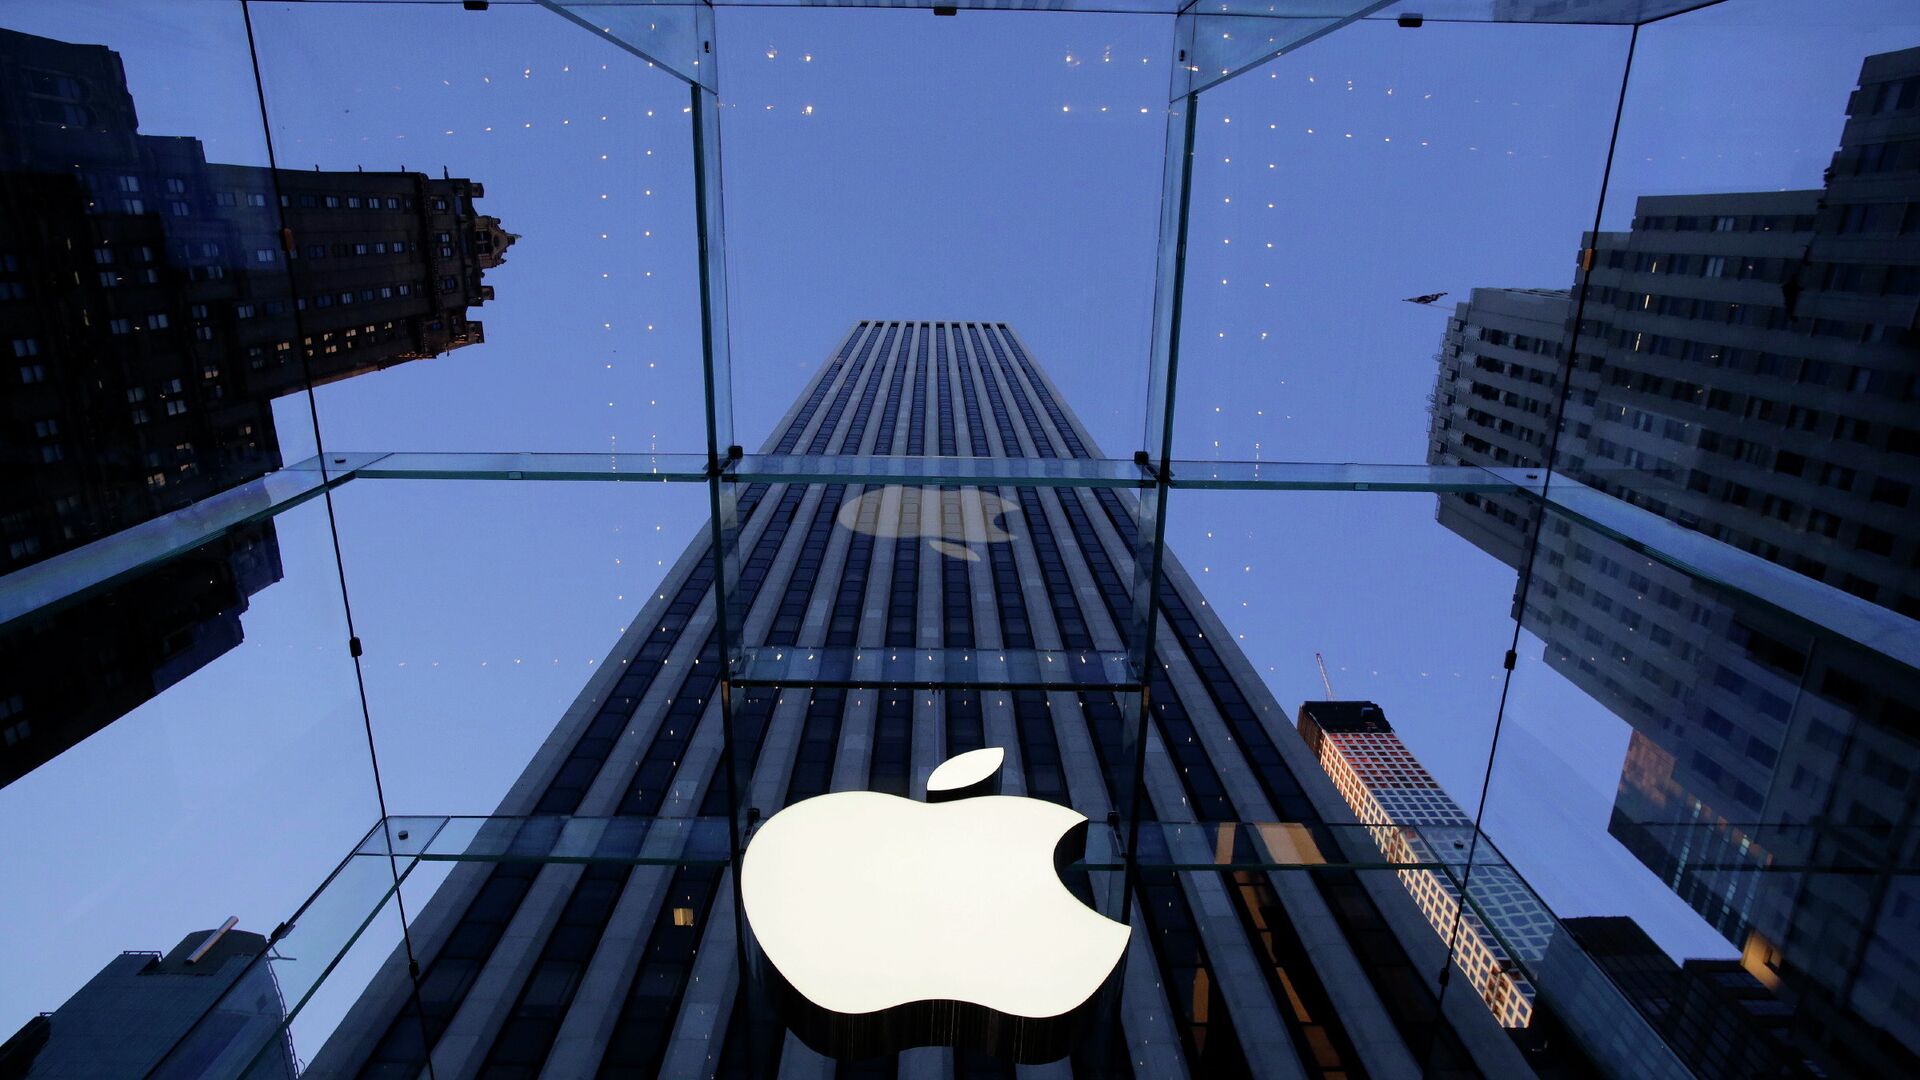 Логотип компании Apple над входом в здание в Нью-Йорке, США - РИА Новости, 1920, 12.11.2021